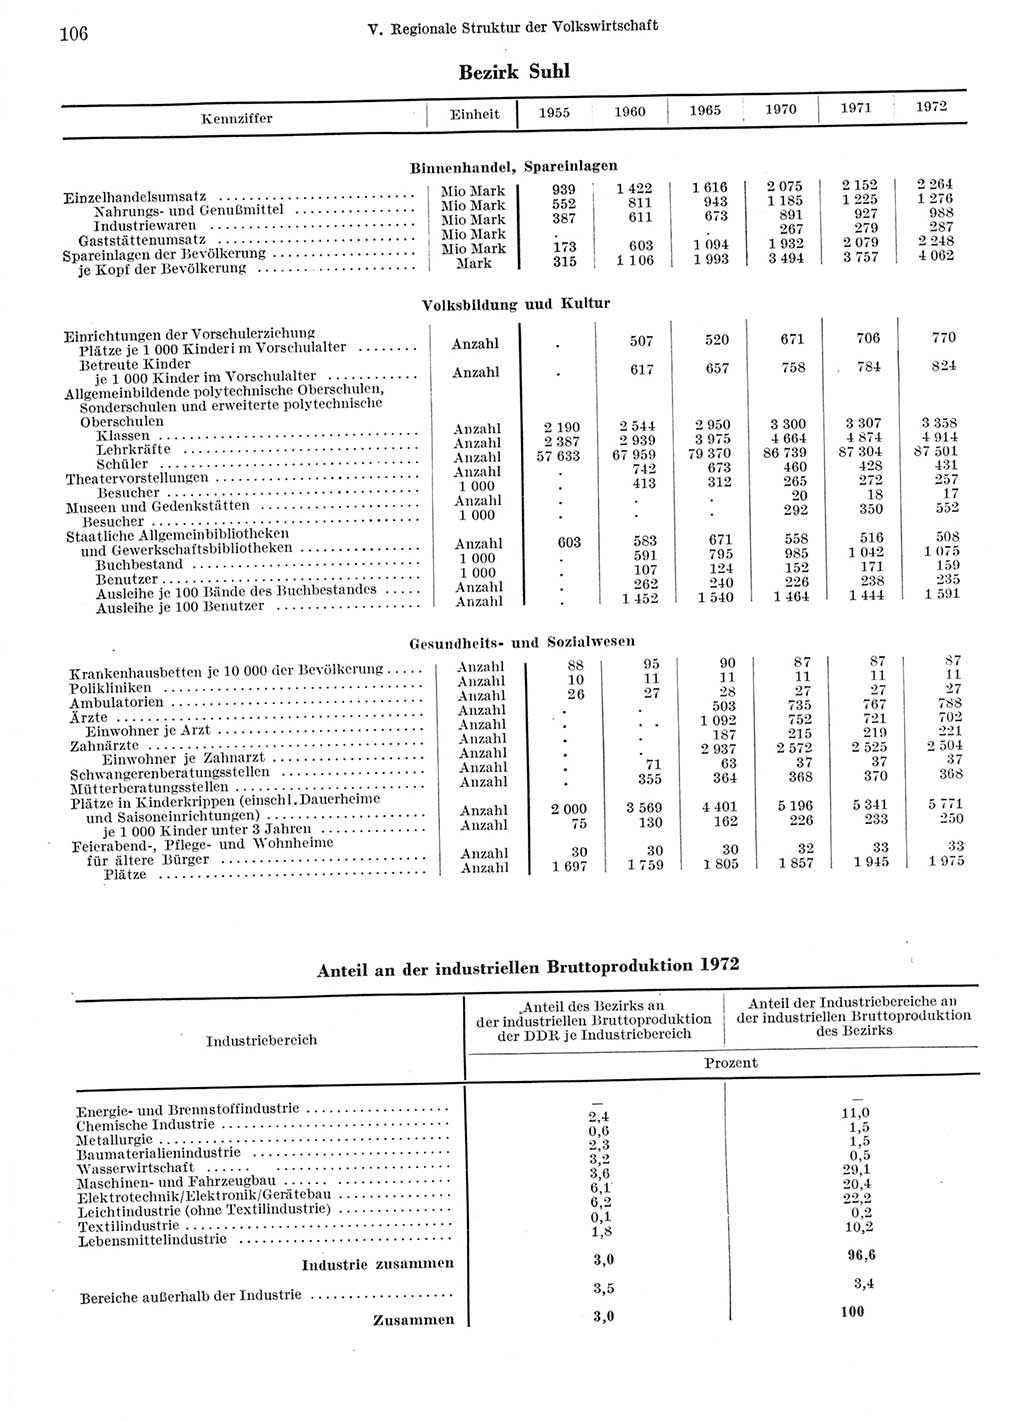 Statistisches Jahrbuch der Deutschen Demokratischen Republik (DDR) 1973, Seite 106 (Stat. Jb. DDR 1973, S. 106)